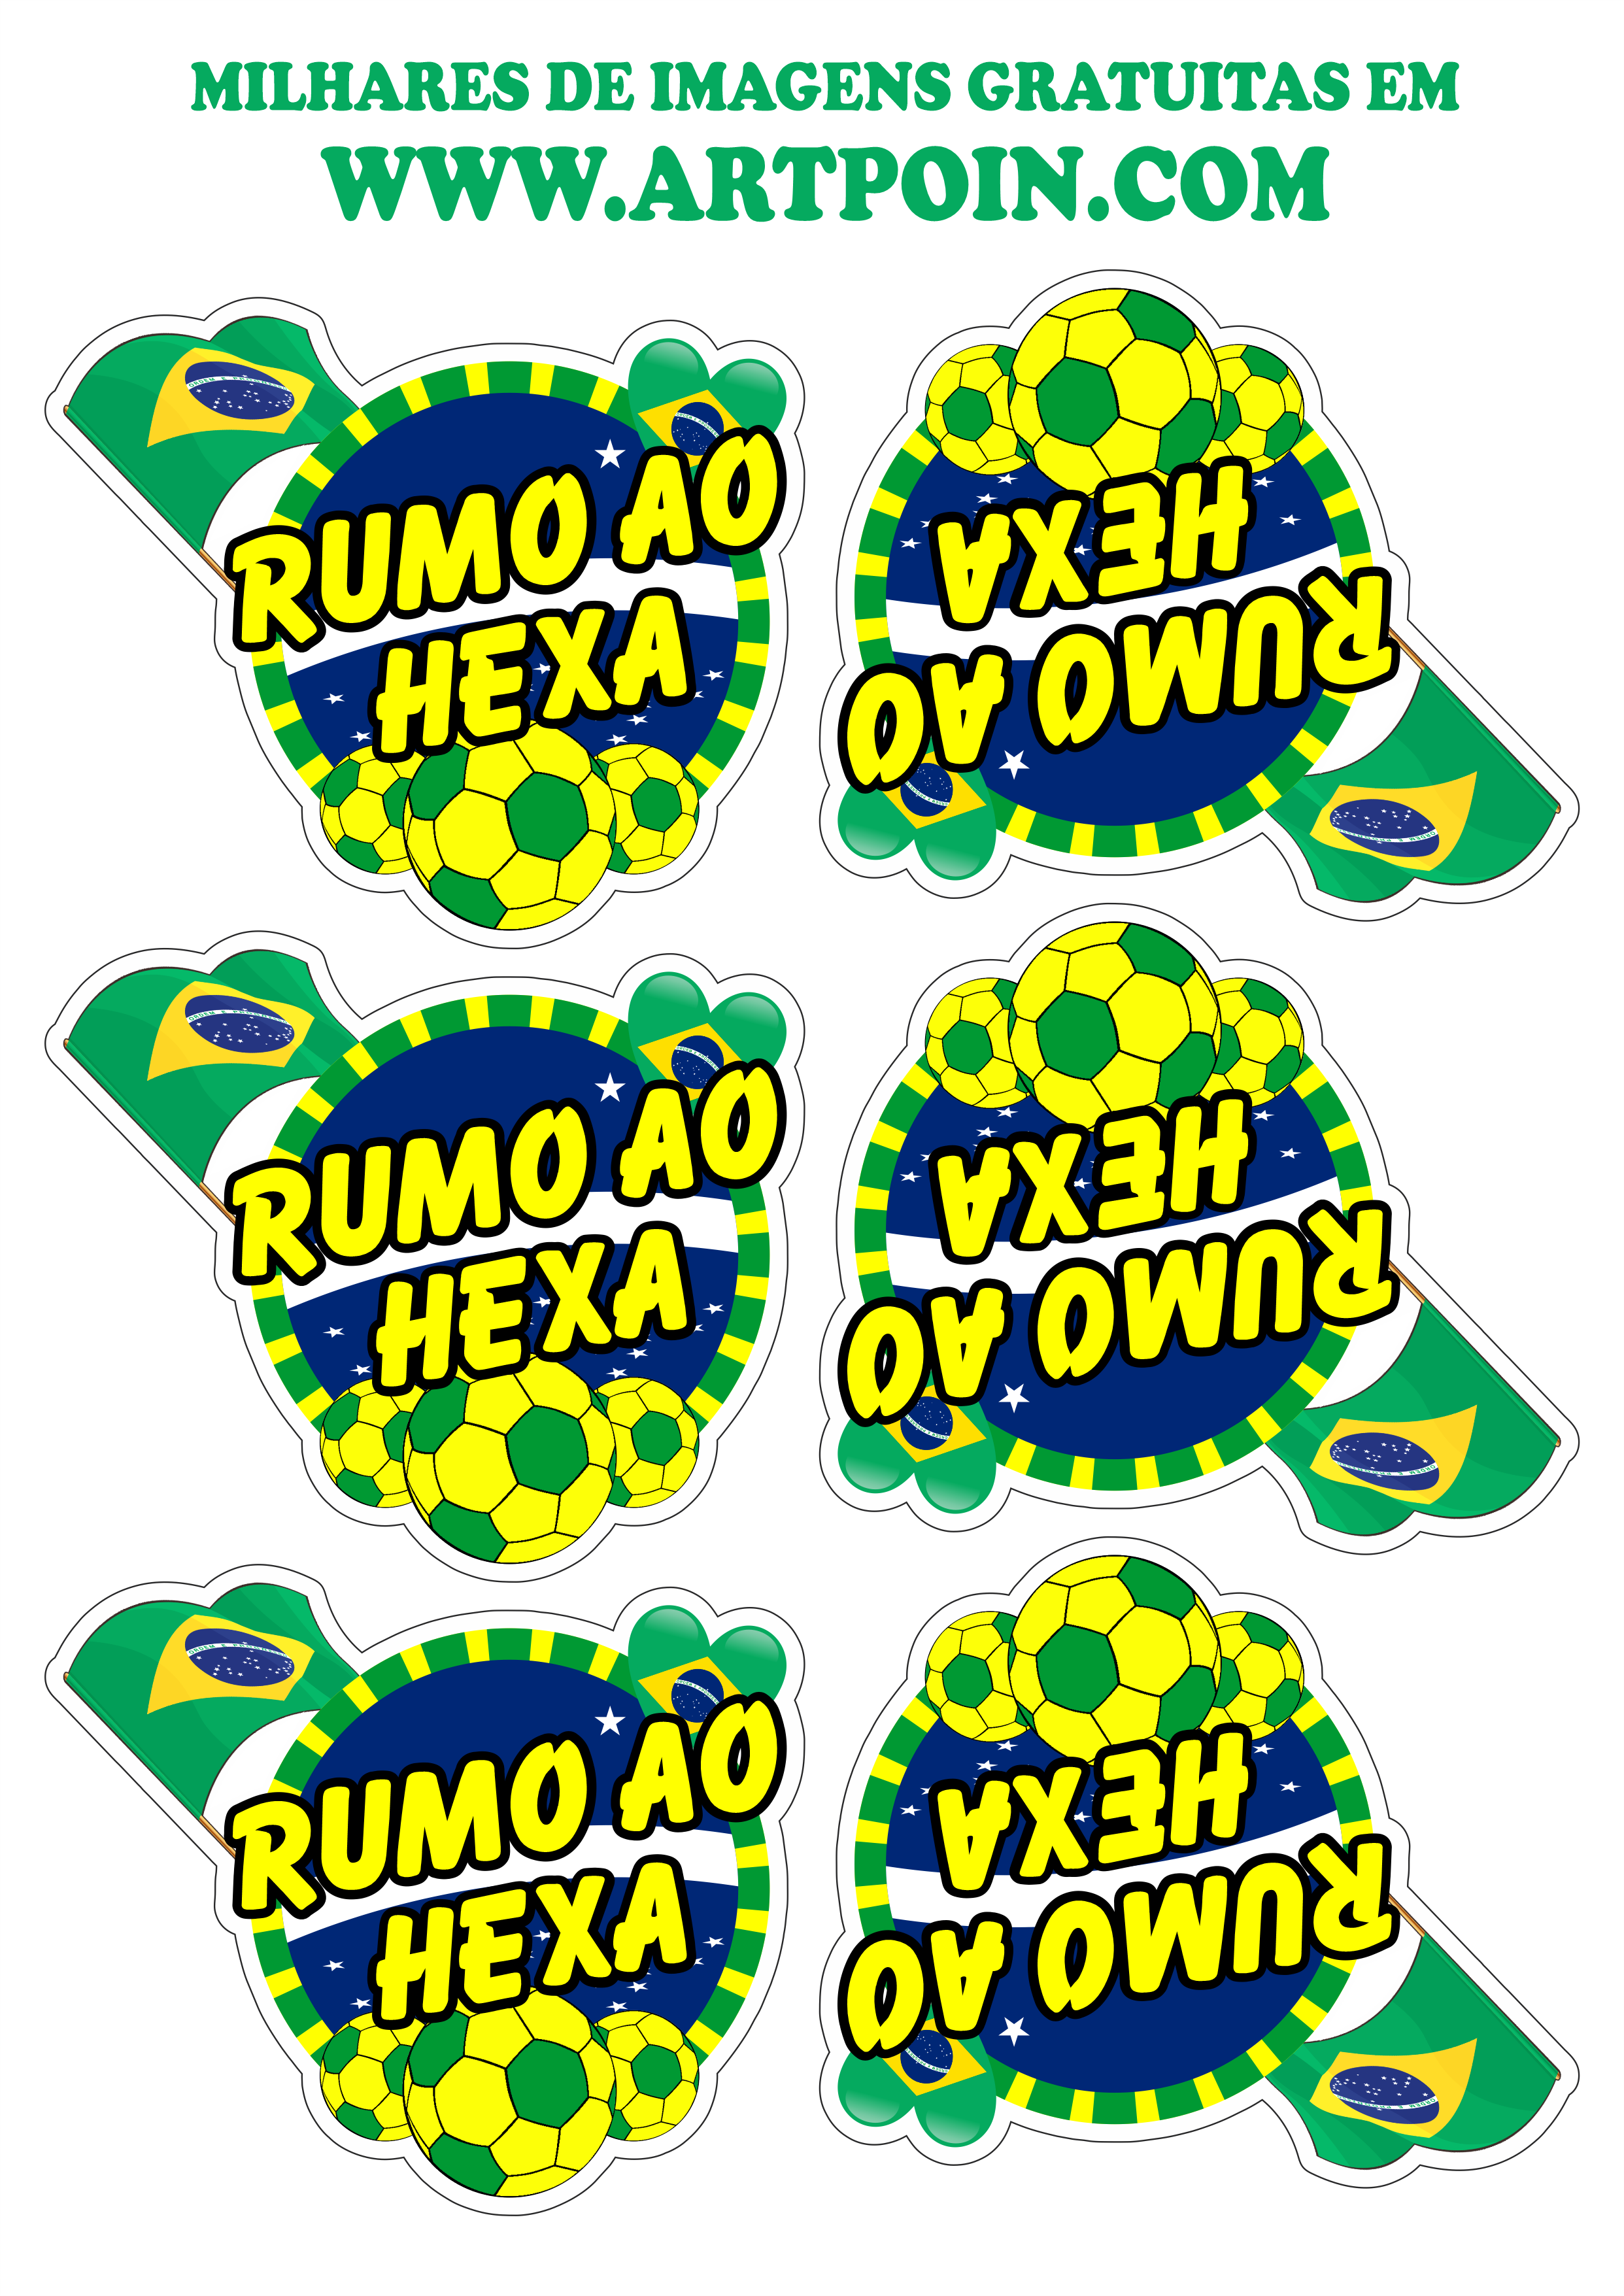 Adesivos stickers copa do mundo brasil rumo ao hexa png